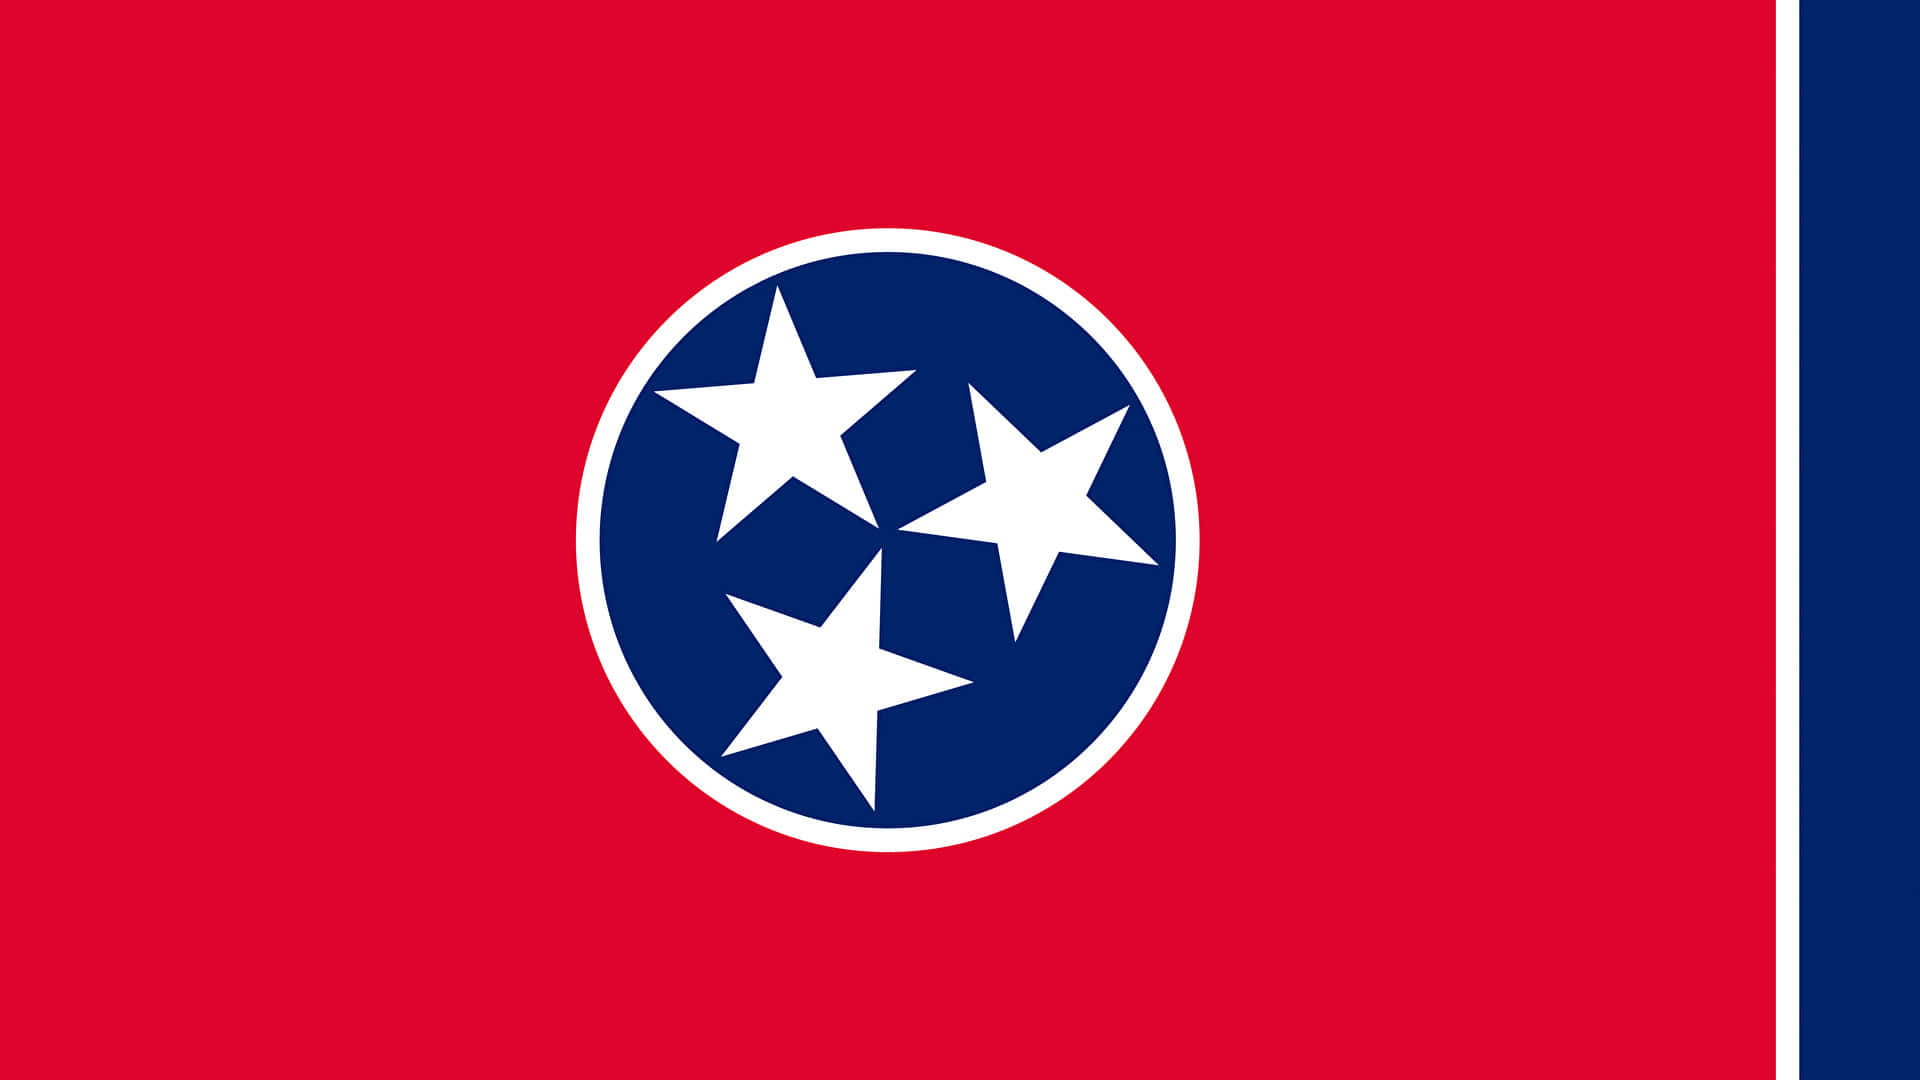 Arcoíris De Cores Apresentam O Orgulho De Tennessee. Papel de Parede